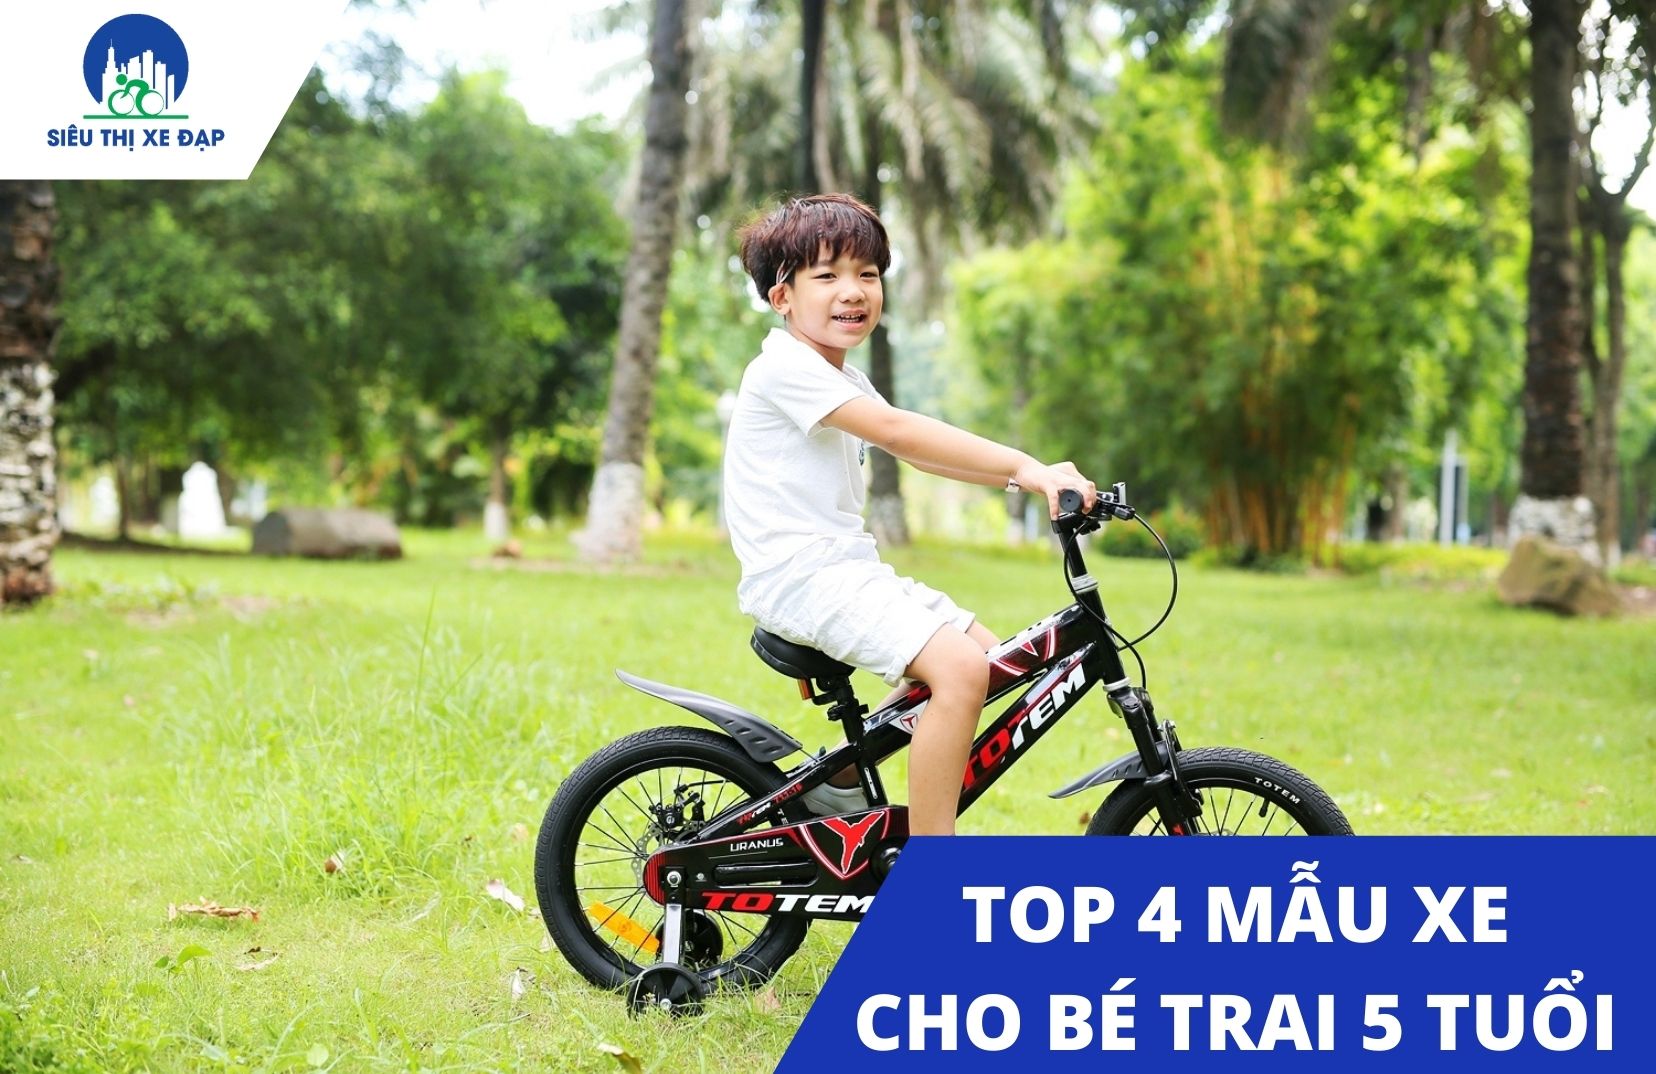 4 mẫu xe đạp cho bé trai 5 tuổi chất lượng nhất 2021